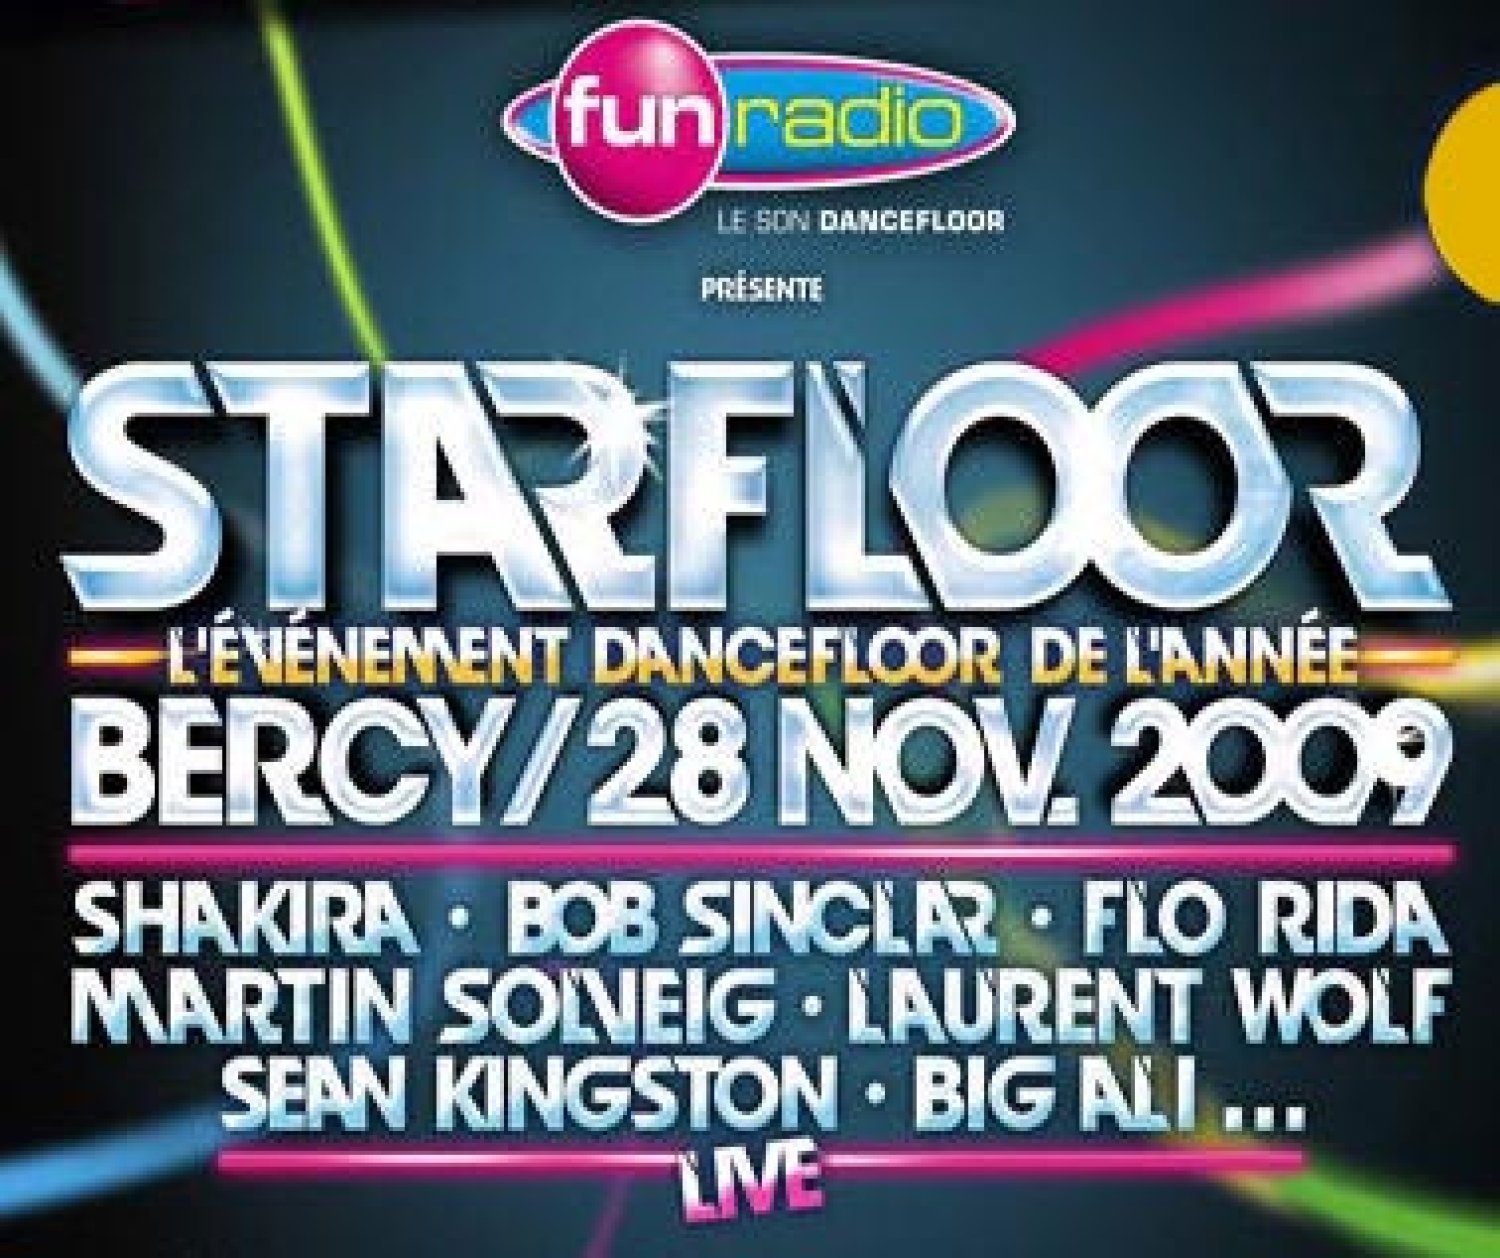 Starfloor 2009 à Bercy